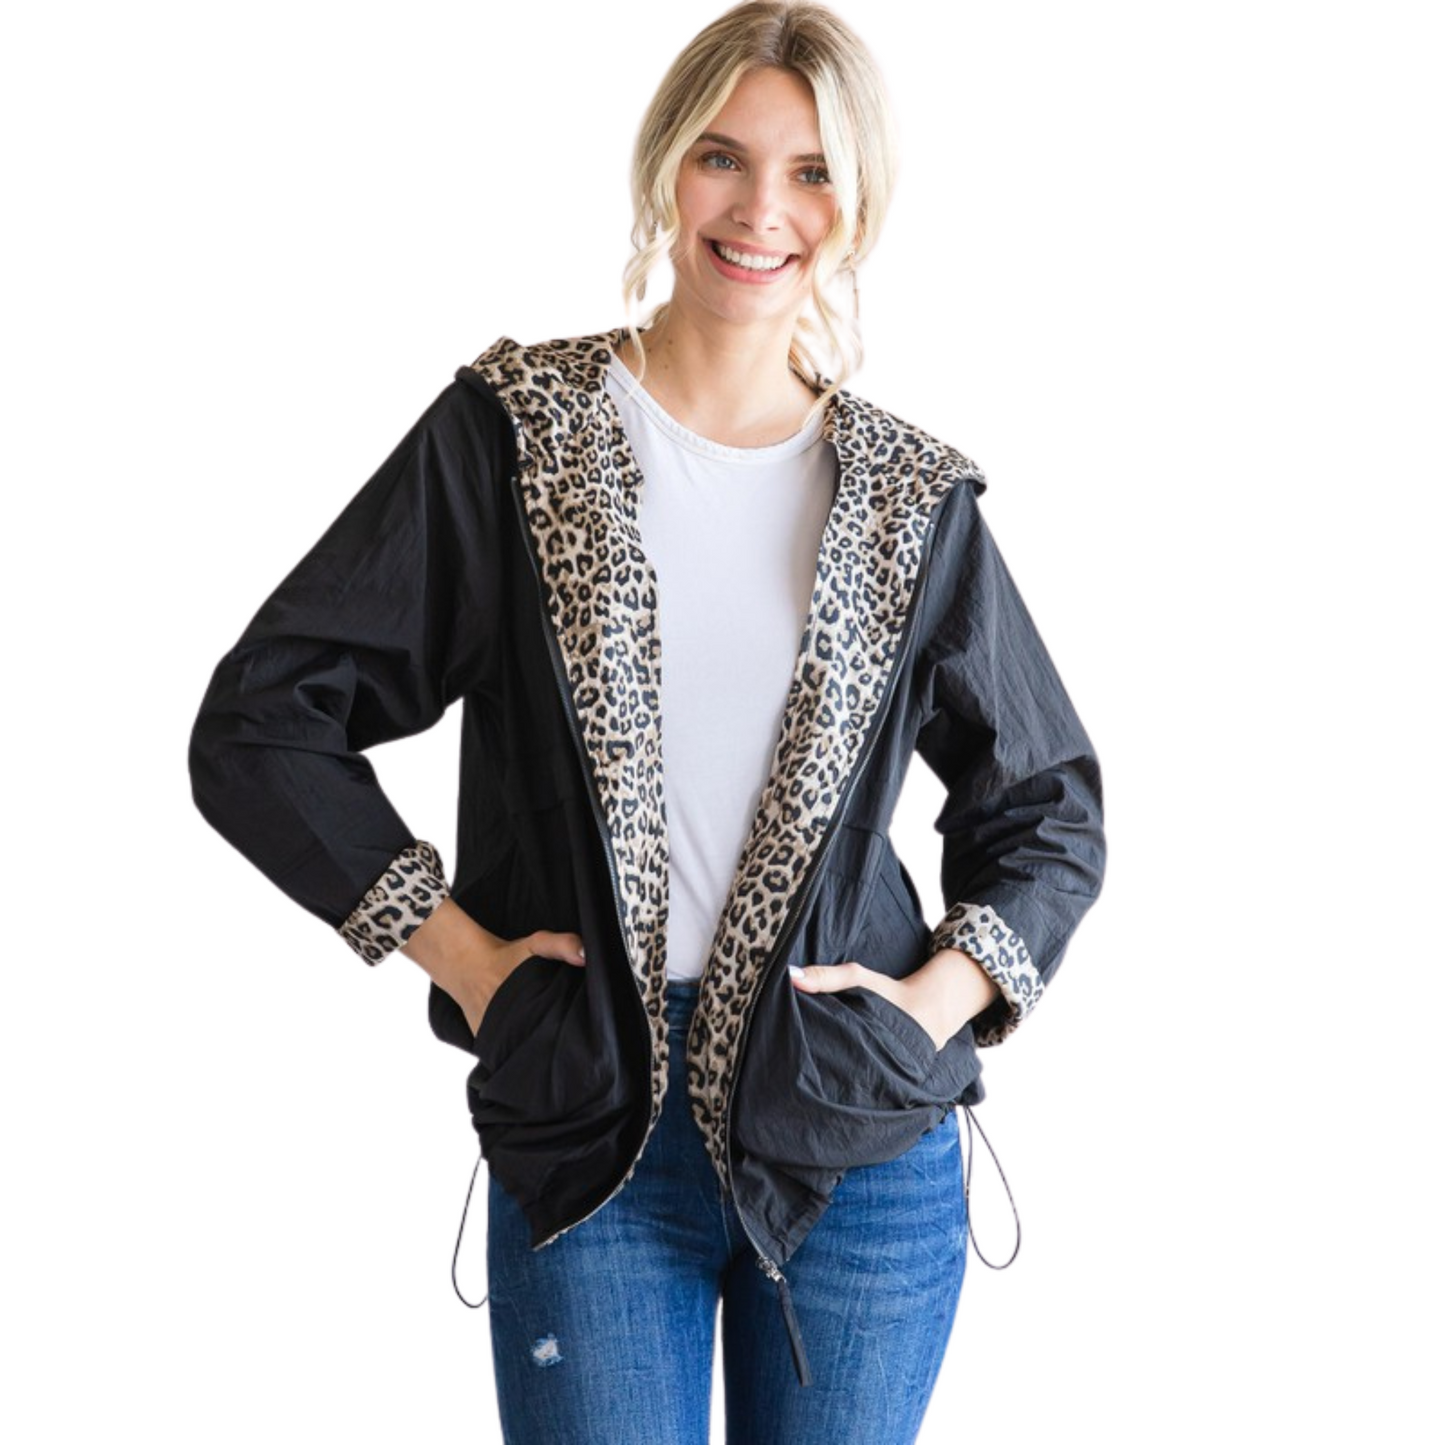 Leopard lined windbreaker jacket in black